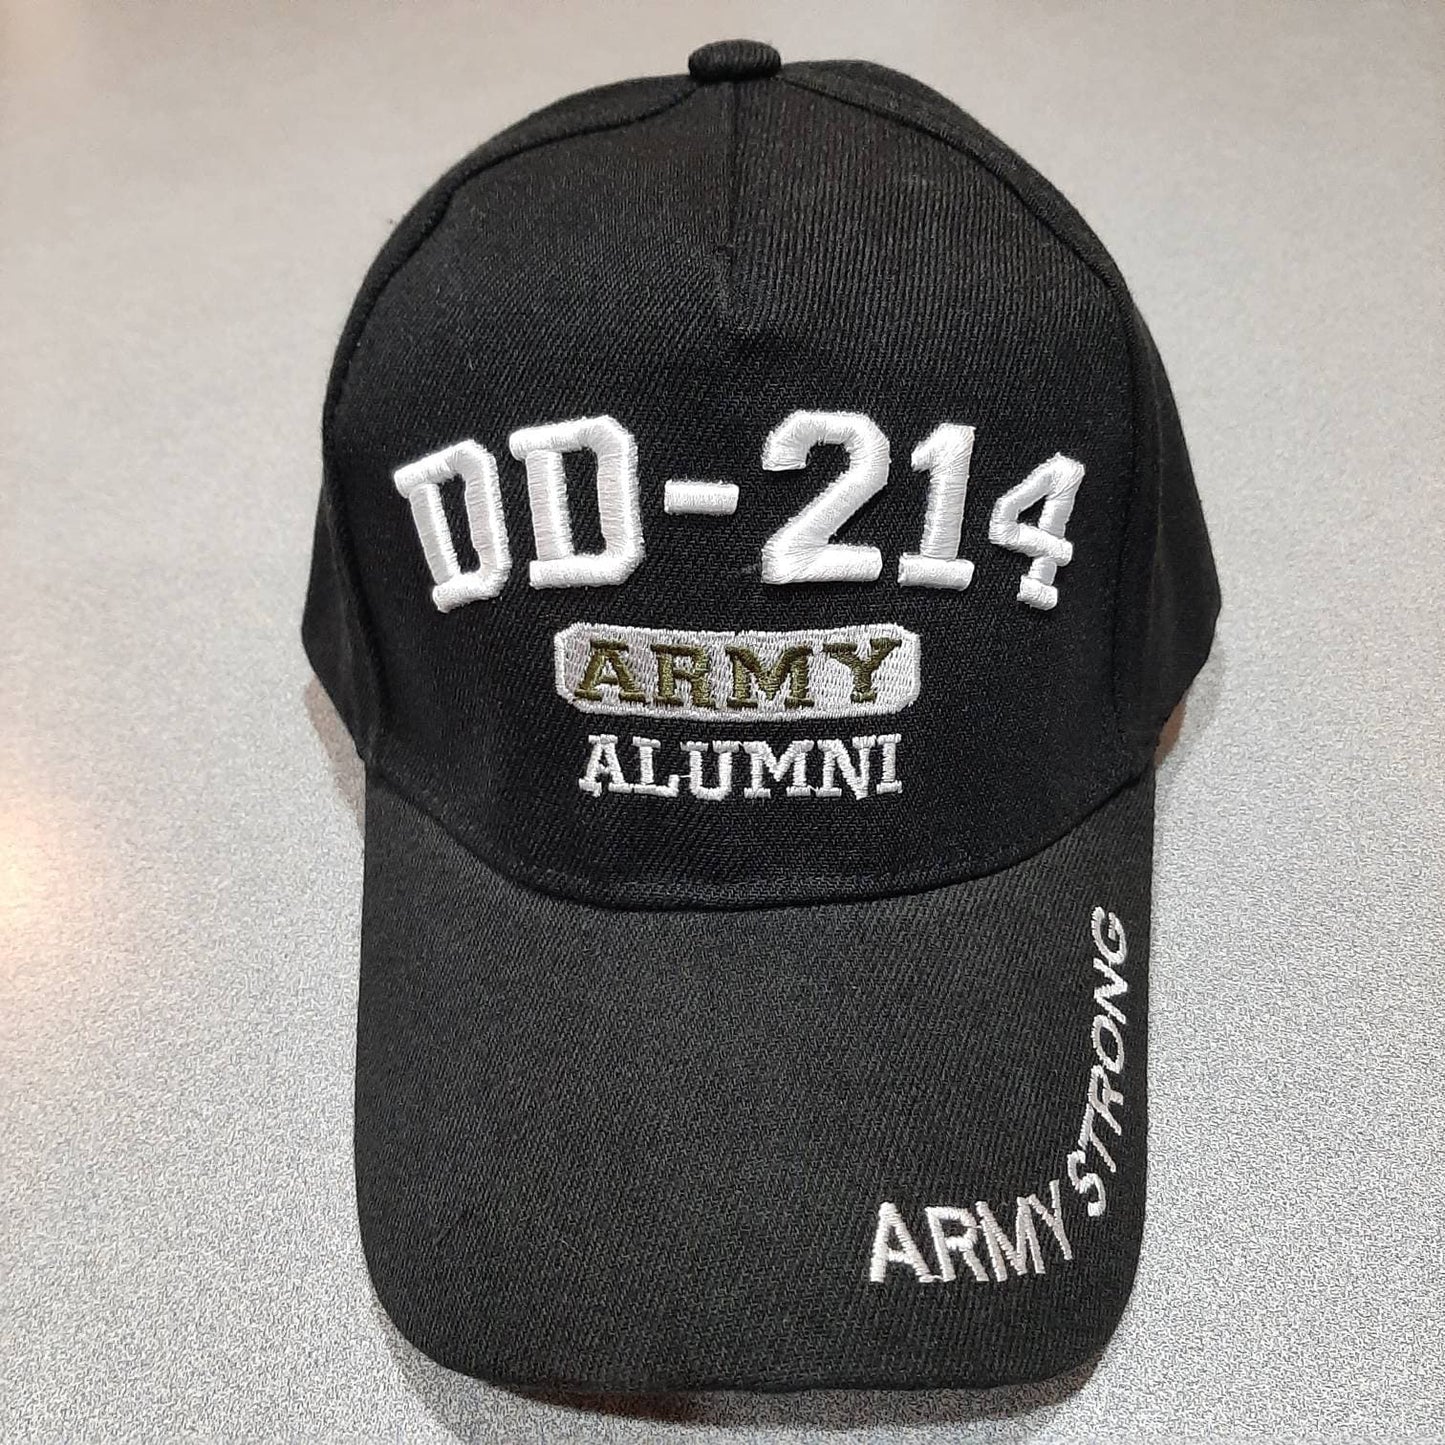 DD-214 Alumni Army Baseball Cap Hat